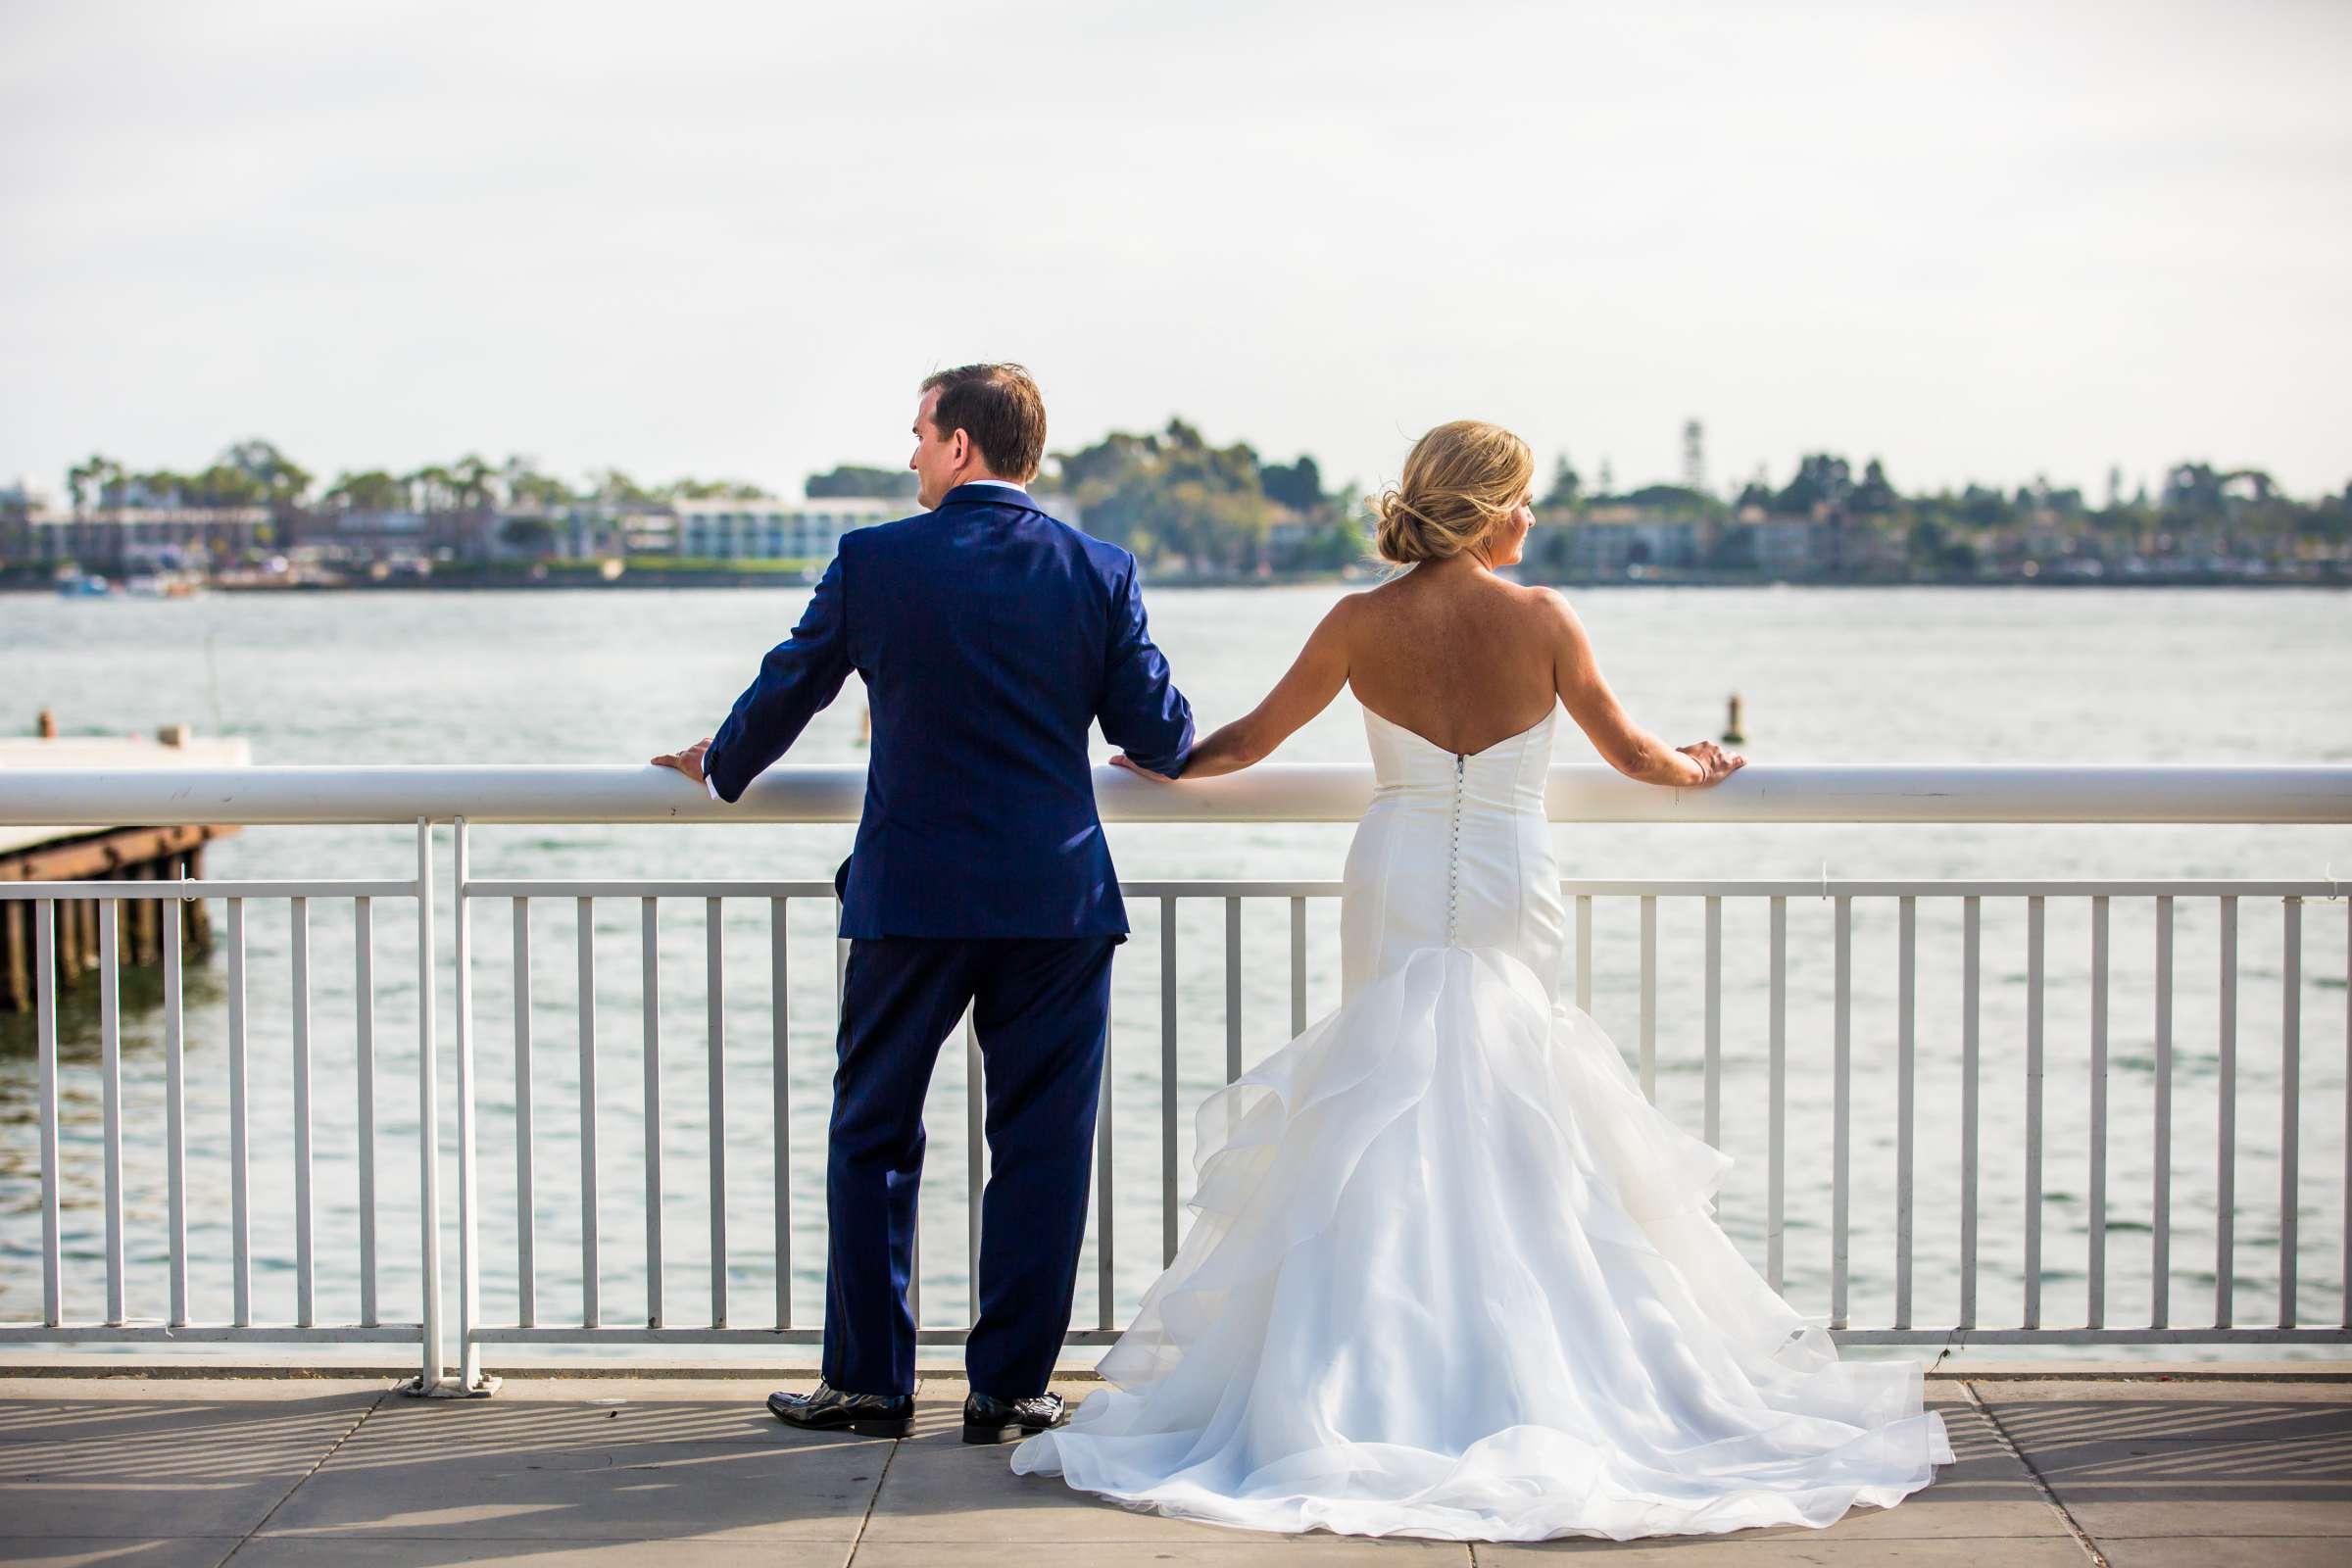 Hilton San Diego Bayfront Wedding, Debi and Dan Wedding Photo #484058 by True Photography